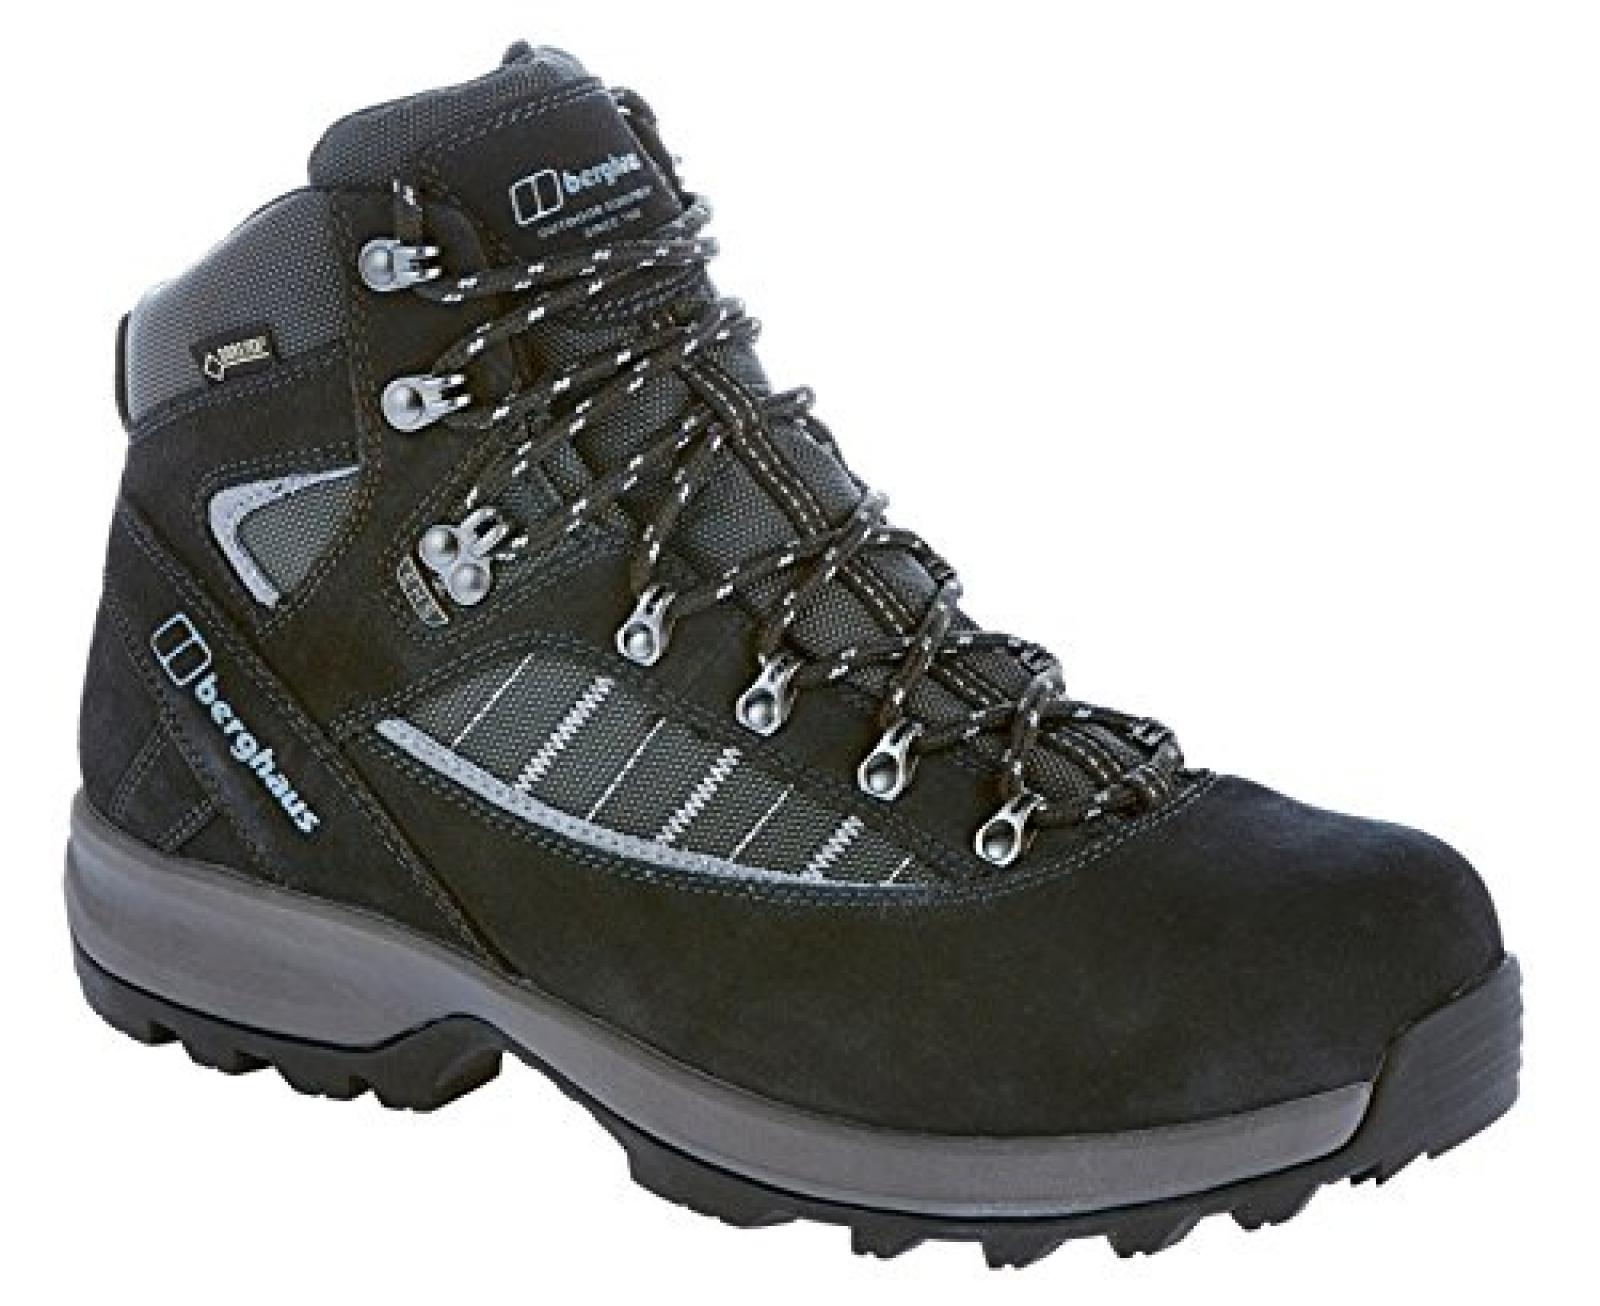 Berghaus Explorer Trek Vii Gtx Tech Boots - Navy / Frost Grey 